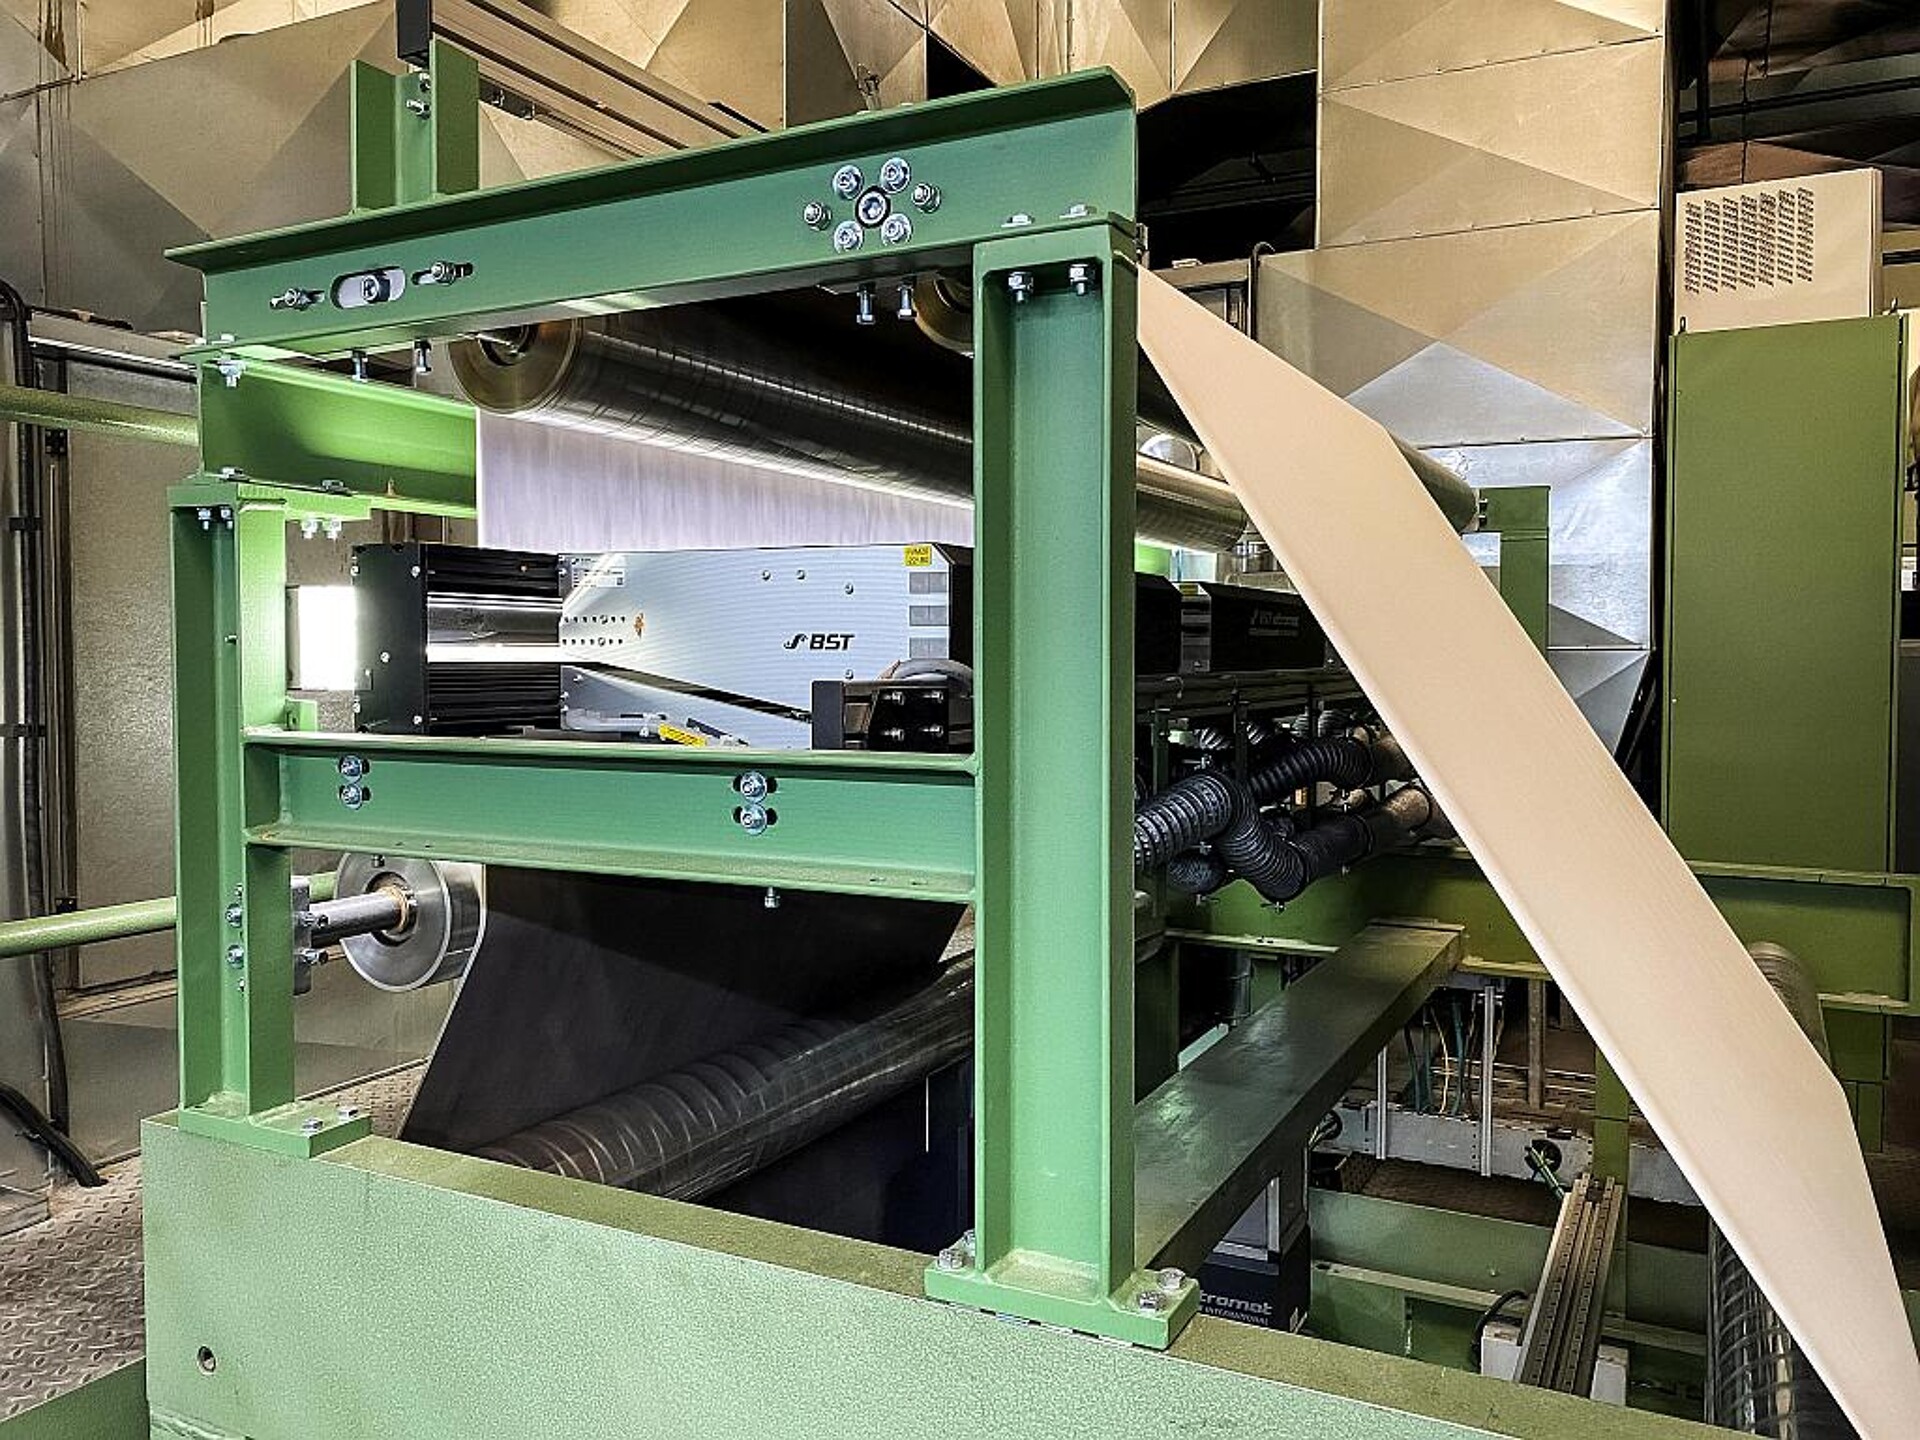 Um Platz für das System in der bestehenden Druckmaschine zu schaffen, wurde eine Stahlkonstruktion entwickelt, in die die Kameras mit zusätzlichen Umlenkwalzen integriert sind. (Foto: Schattdecor)